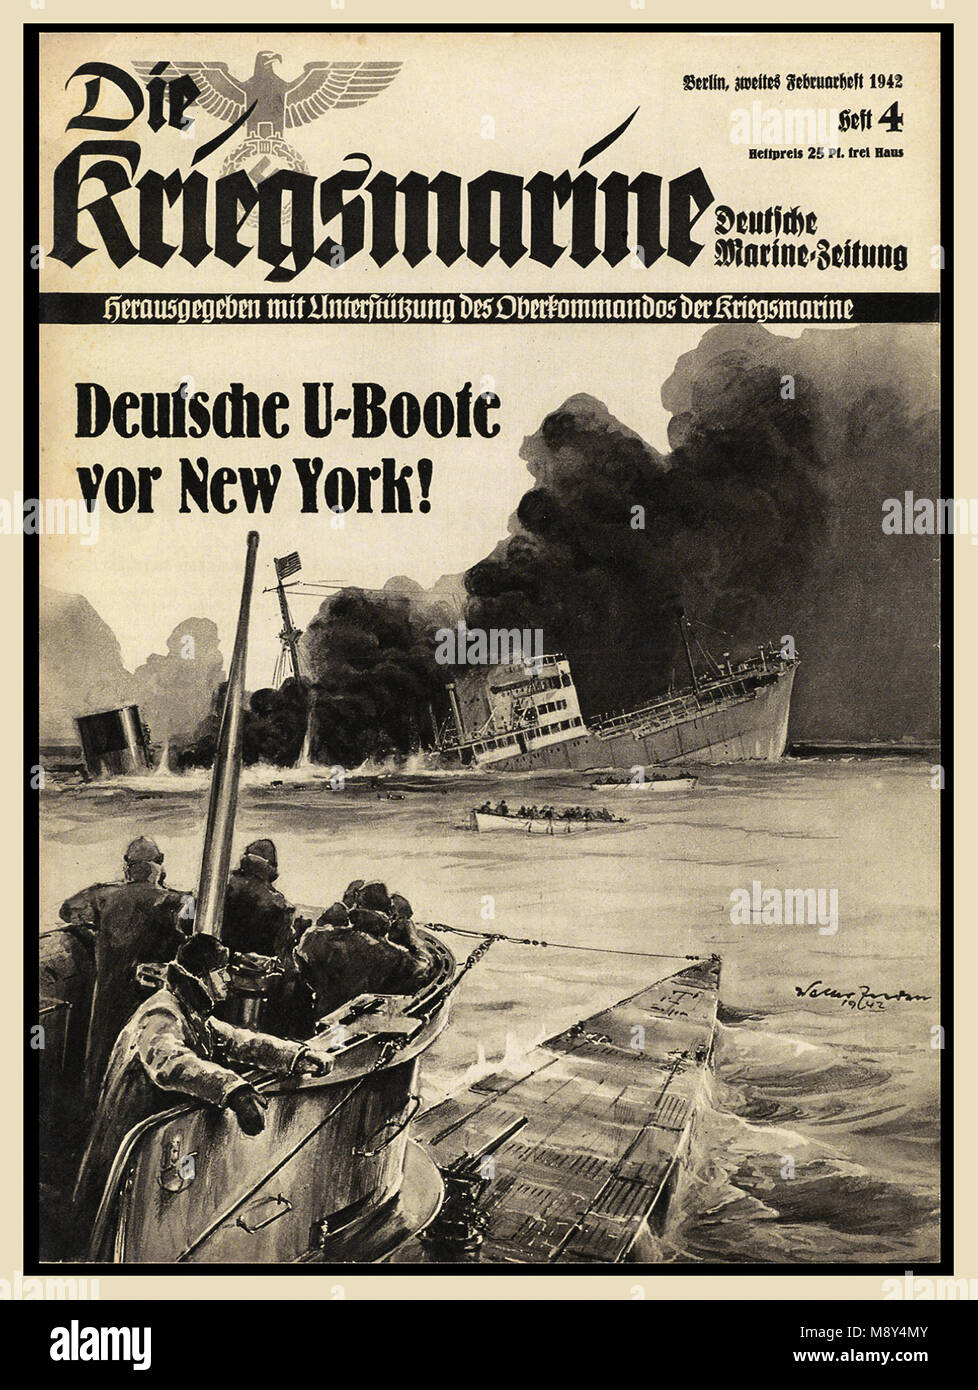 WW2 1940's illustrato propaganda nazista 'Kriegsmarine' rivista della marina tedesca report contenente circa il tedesco guerra navale. Coperchio anteriore illustra U-boat tedesca naufragio di una nave mercantile legato per New York STATI UNITI D'AMERICA Foto Stock